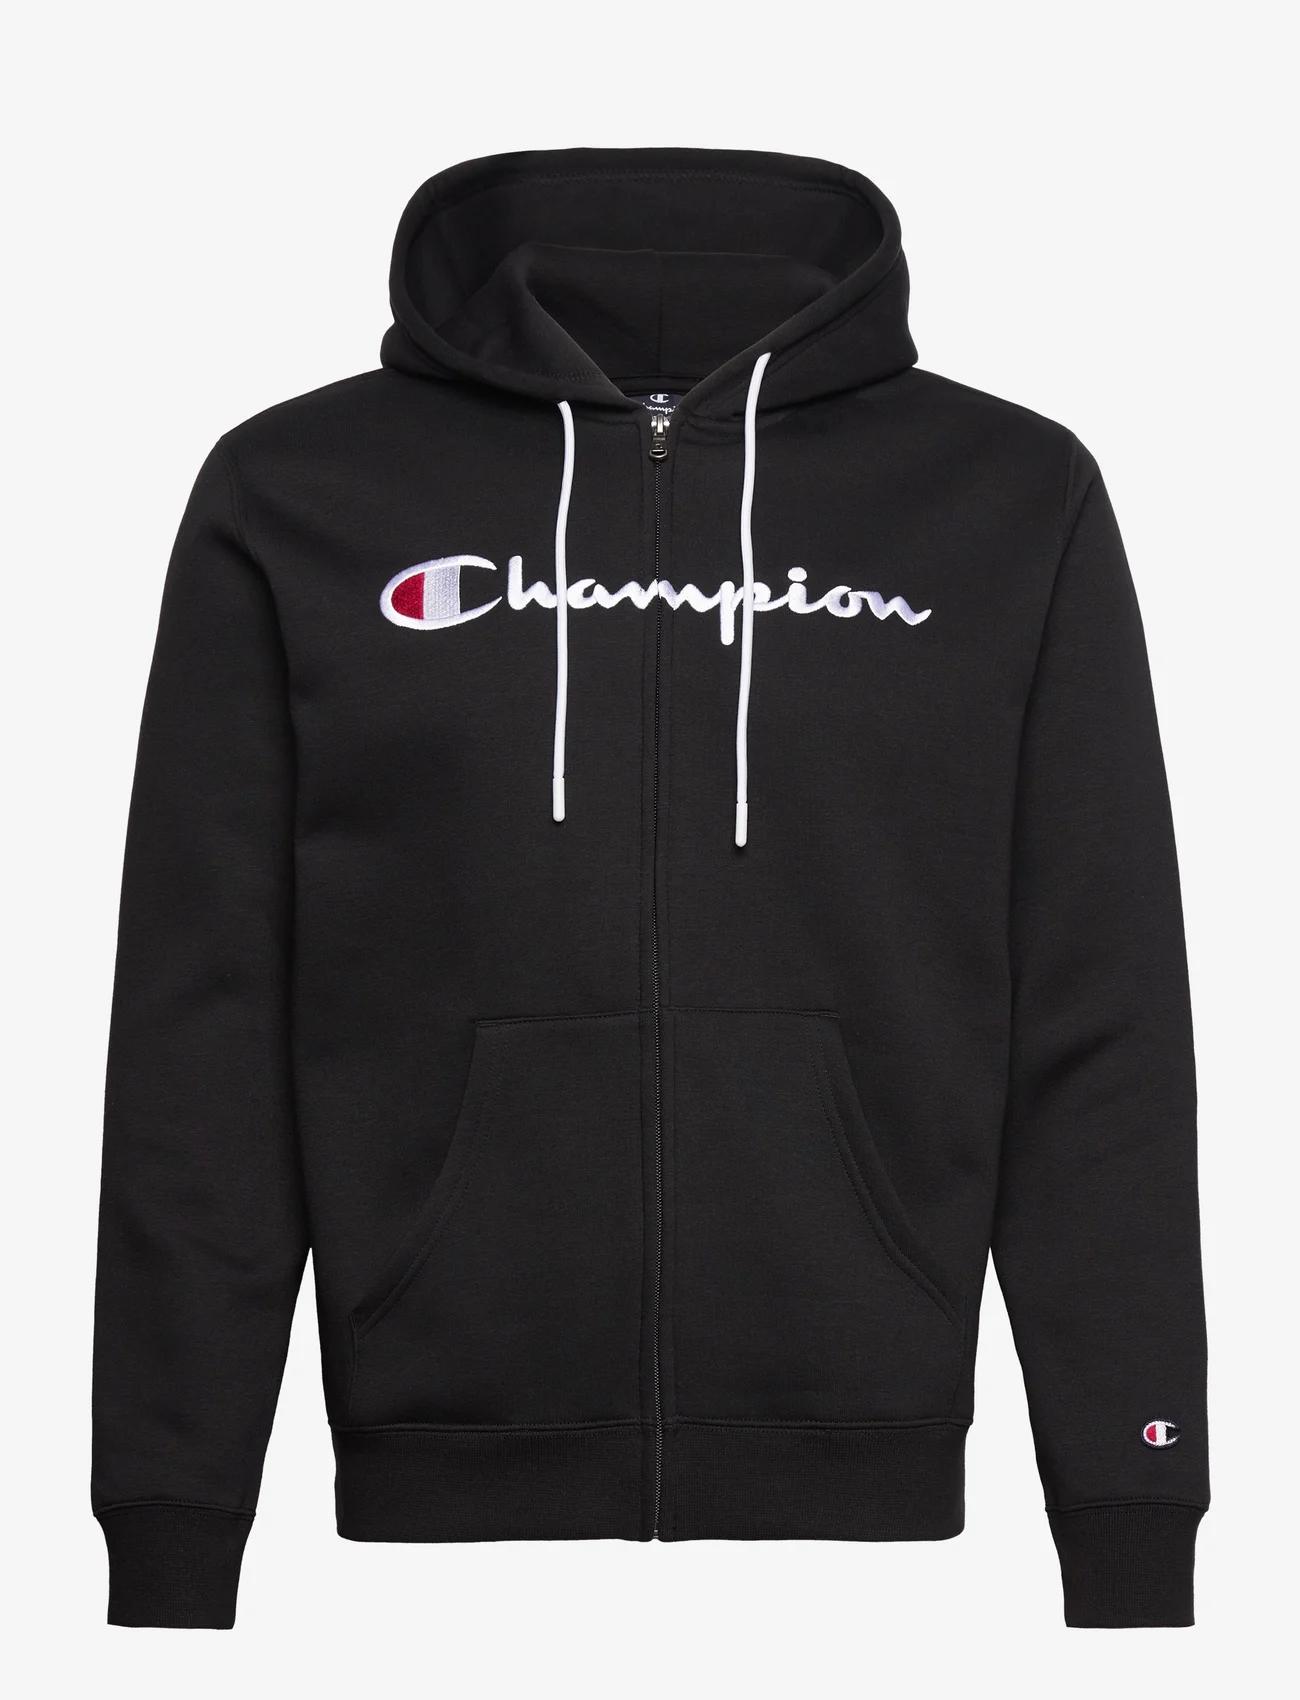 Champion - Hooded Full Zip Sweatshirt - hættetrøjer - black beauty - 0